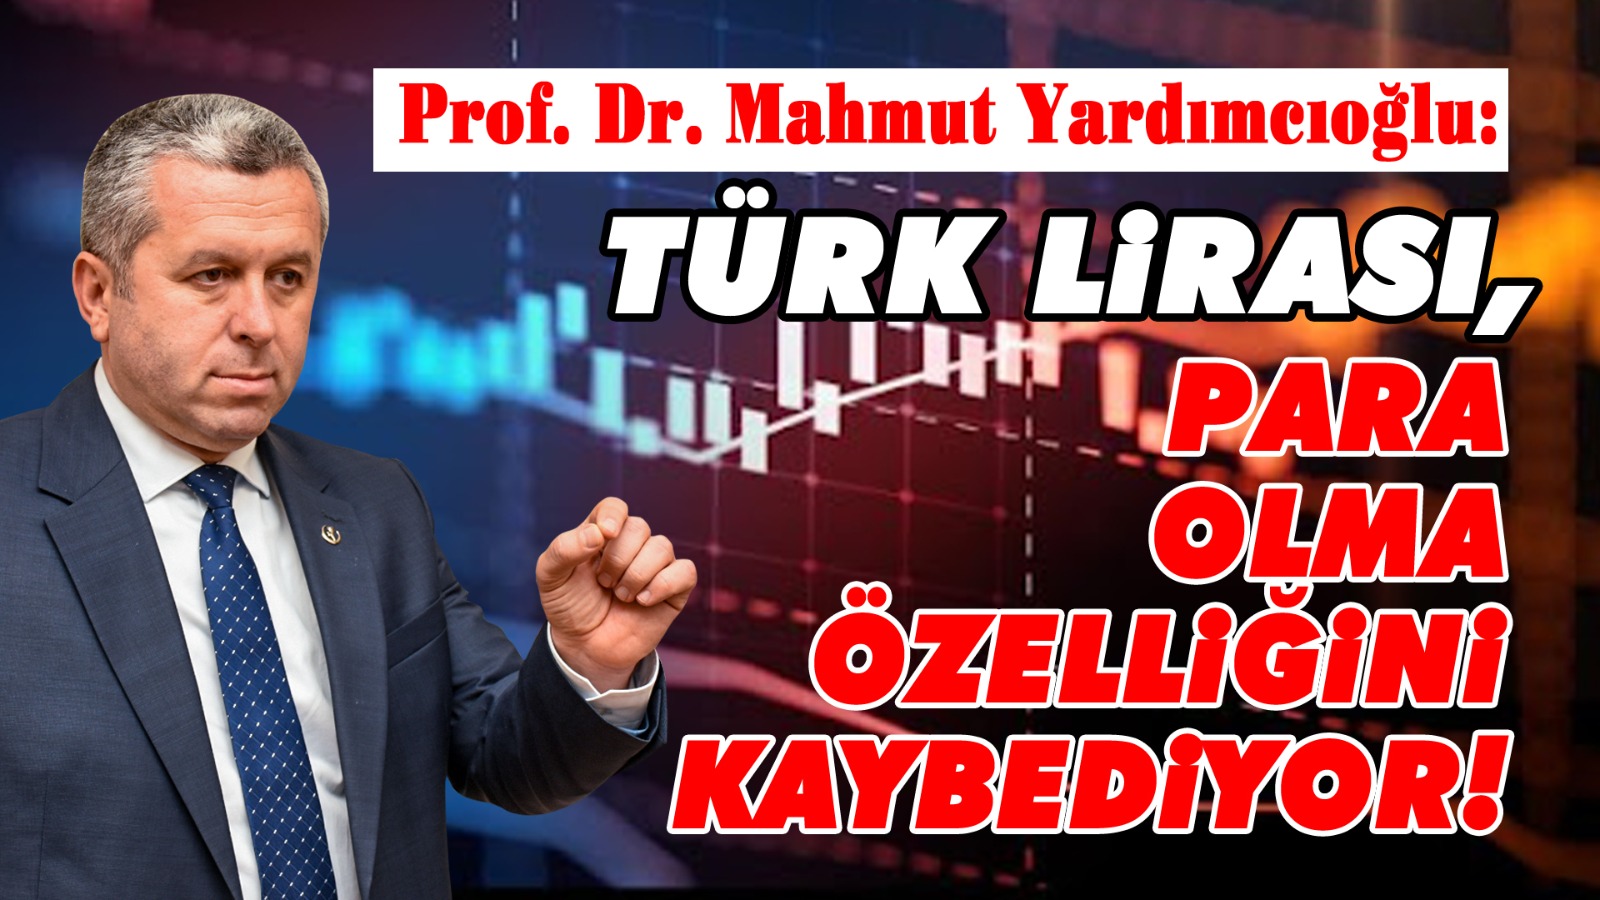 Türk Lirası para olma özelliğini kaybediyor!